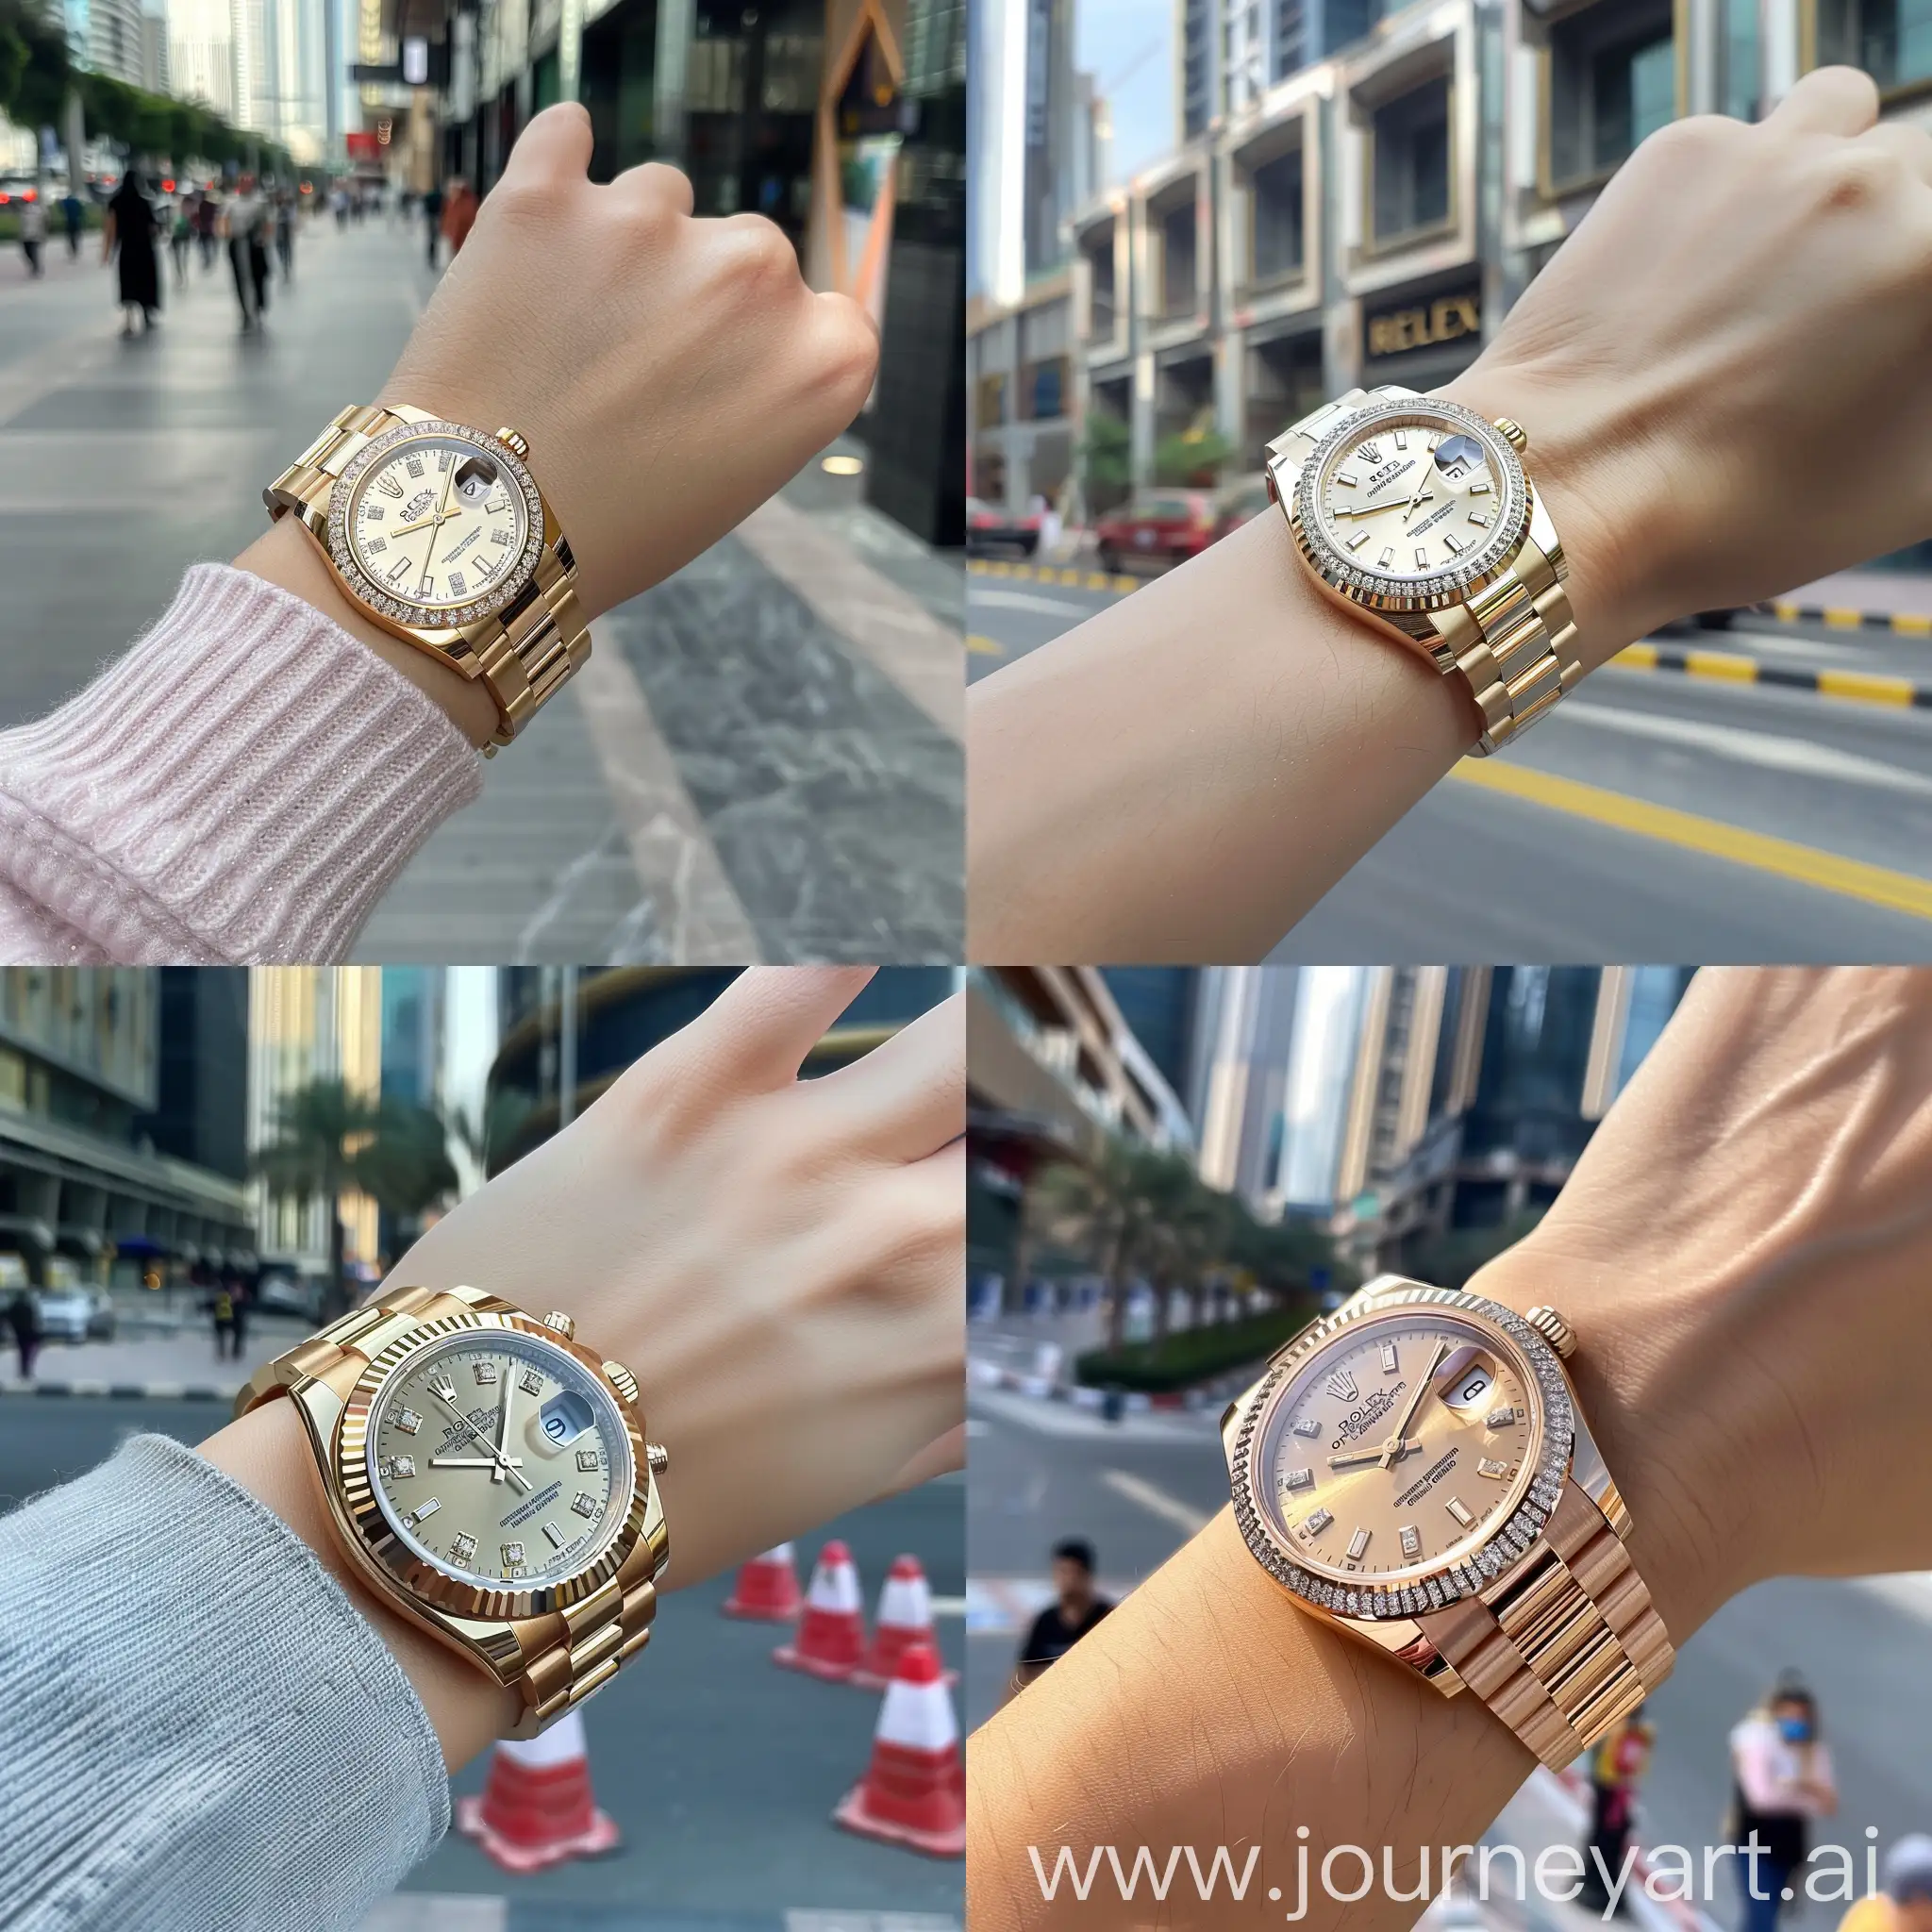 Stylish-Girl-with-Diamond-Bezel-Rolex-Watch-in-Dubai-Downtown-Street